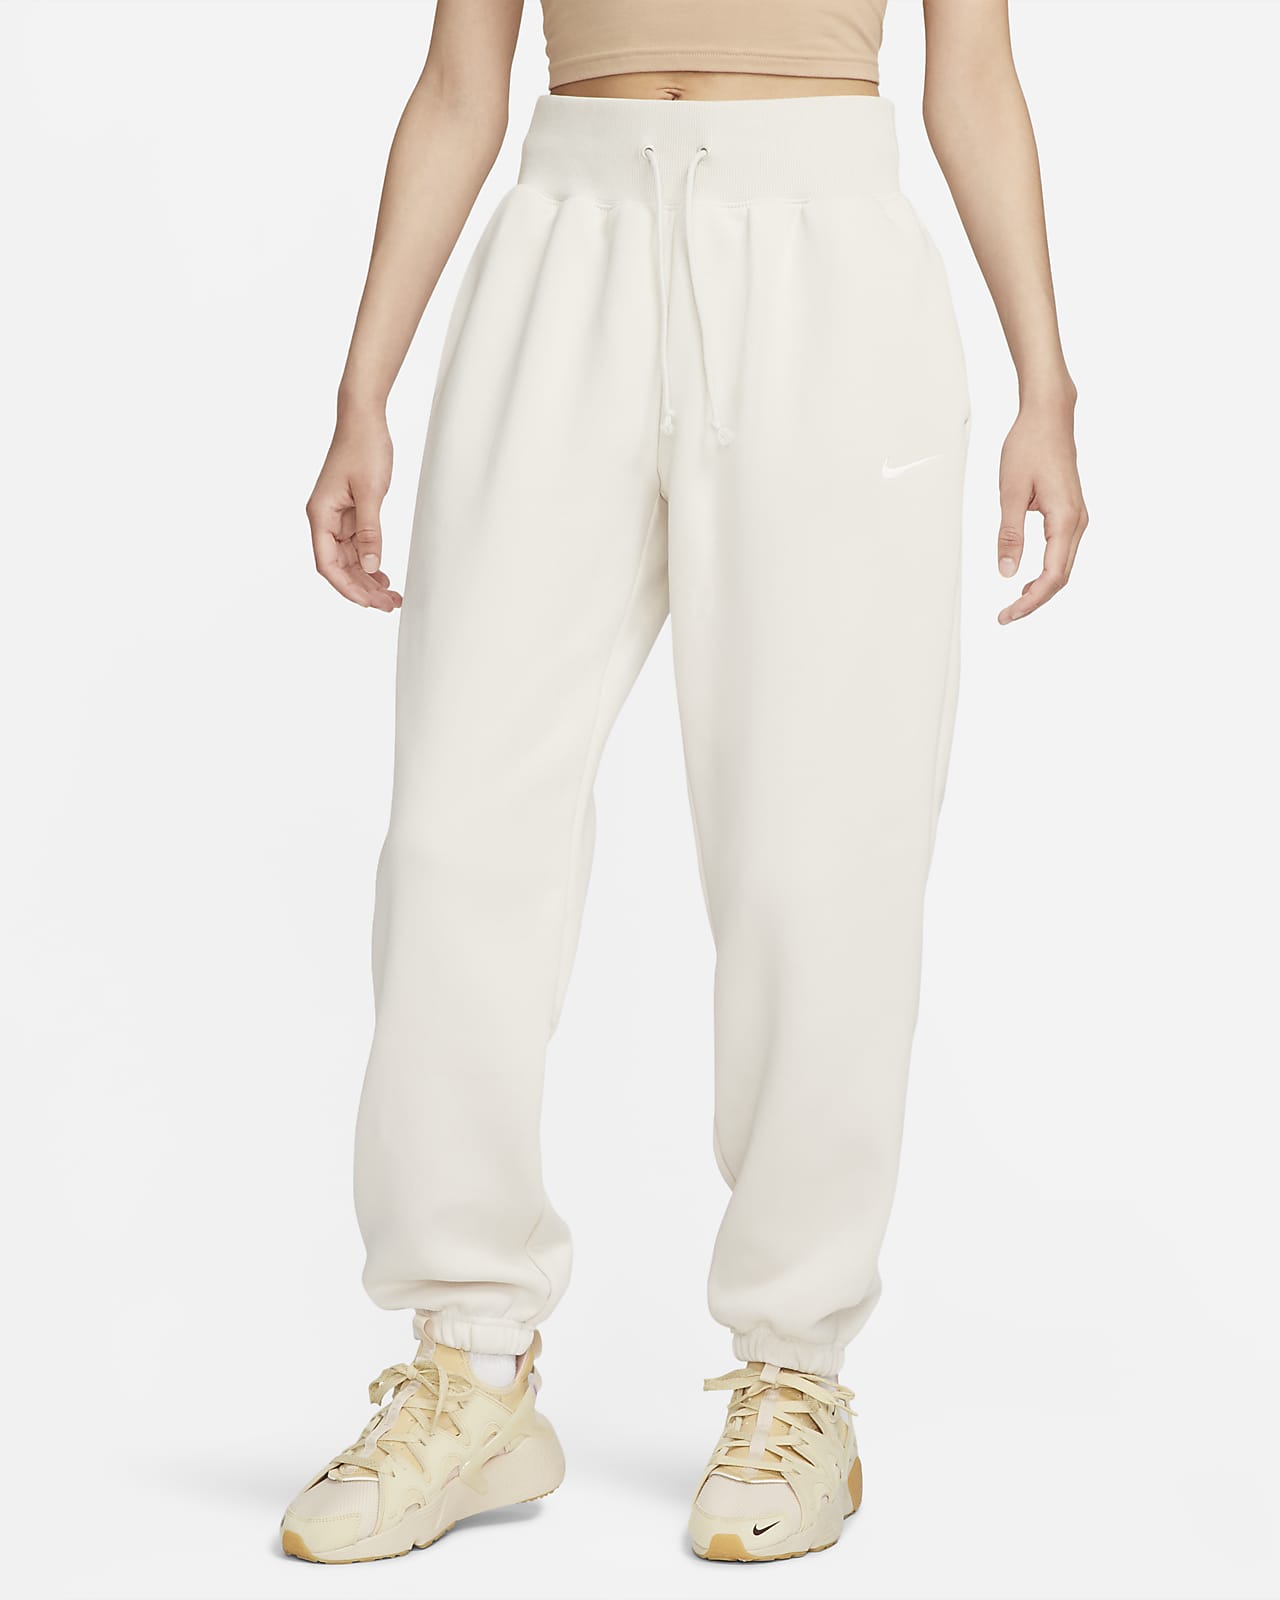 Nike Sportswear Phoenix Fleece Oversize-Trainingshose mit hohem Taillenbund für Damen